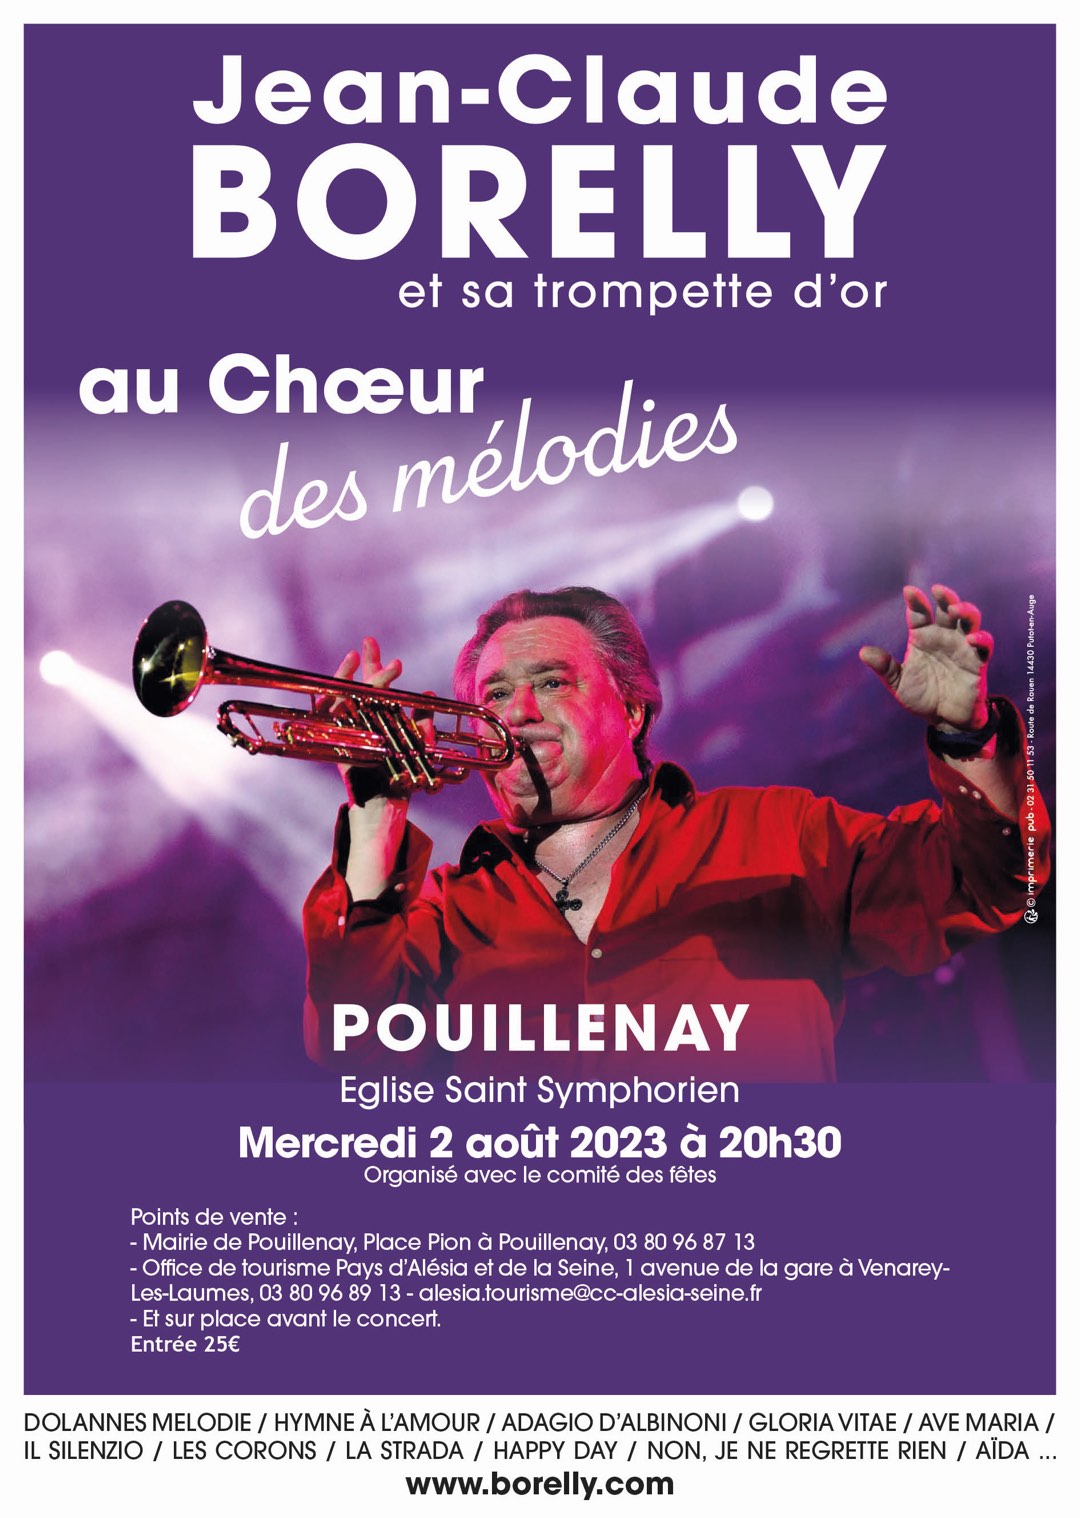 Concert Emile & Images à Port-de-Piles (86) 2 septembre 2023